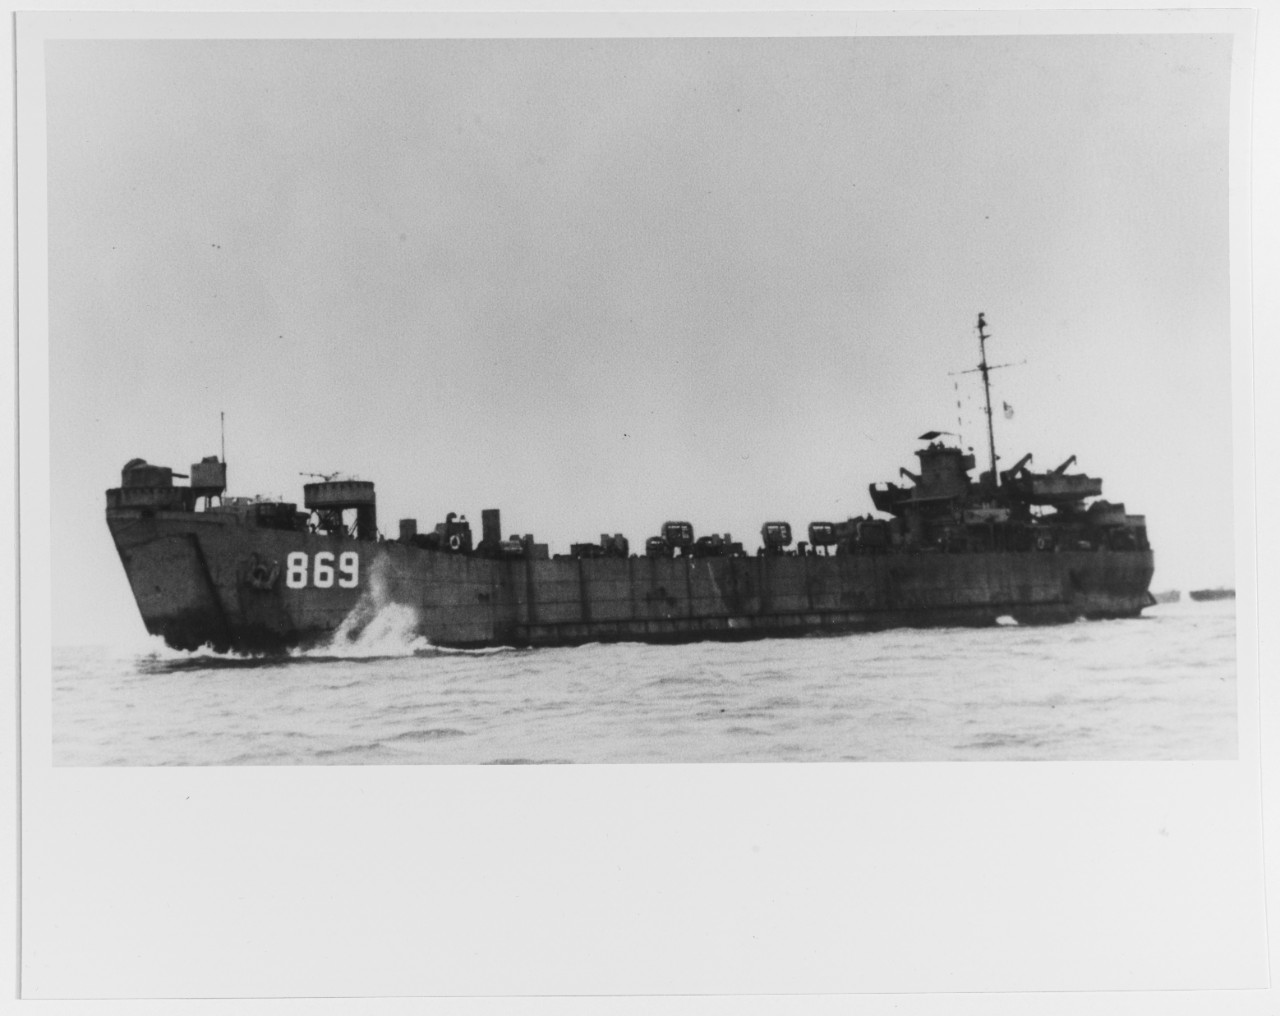 USS LST-869